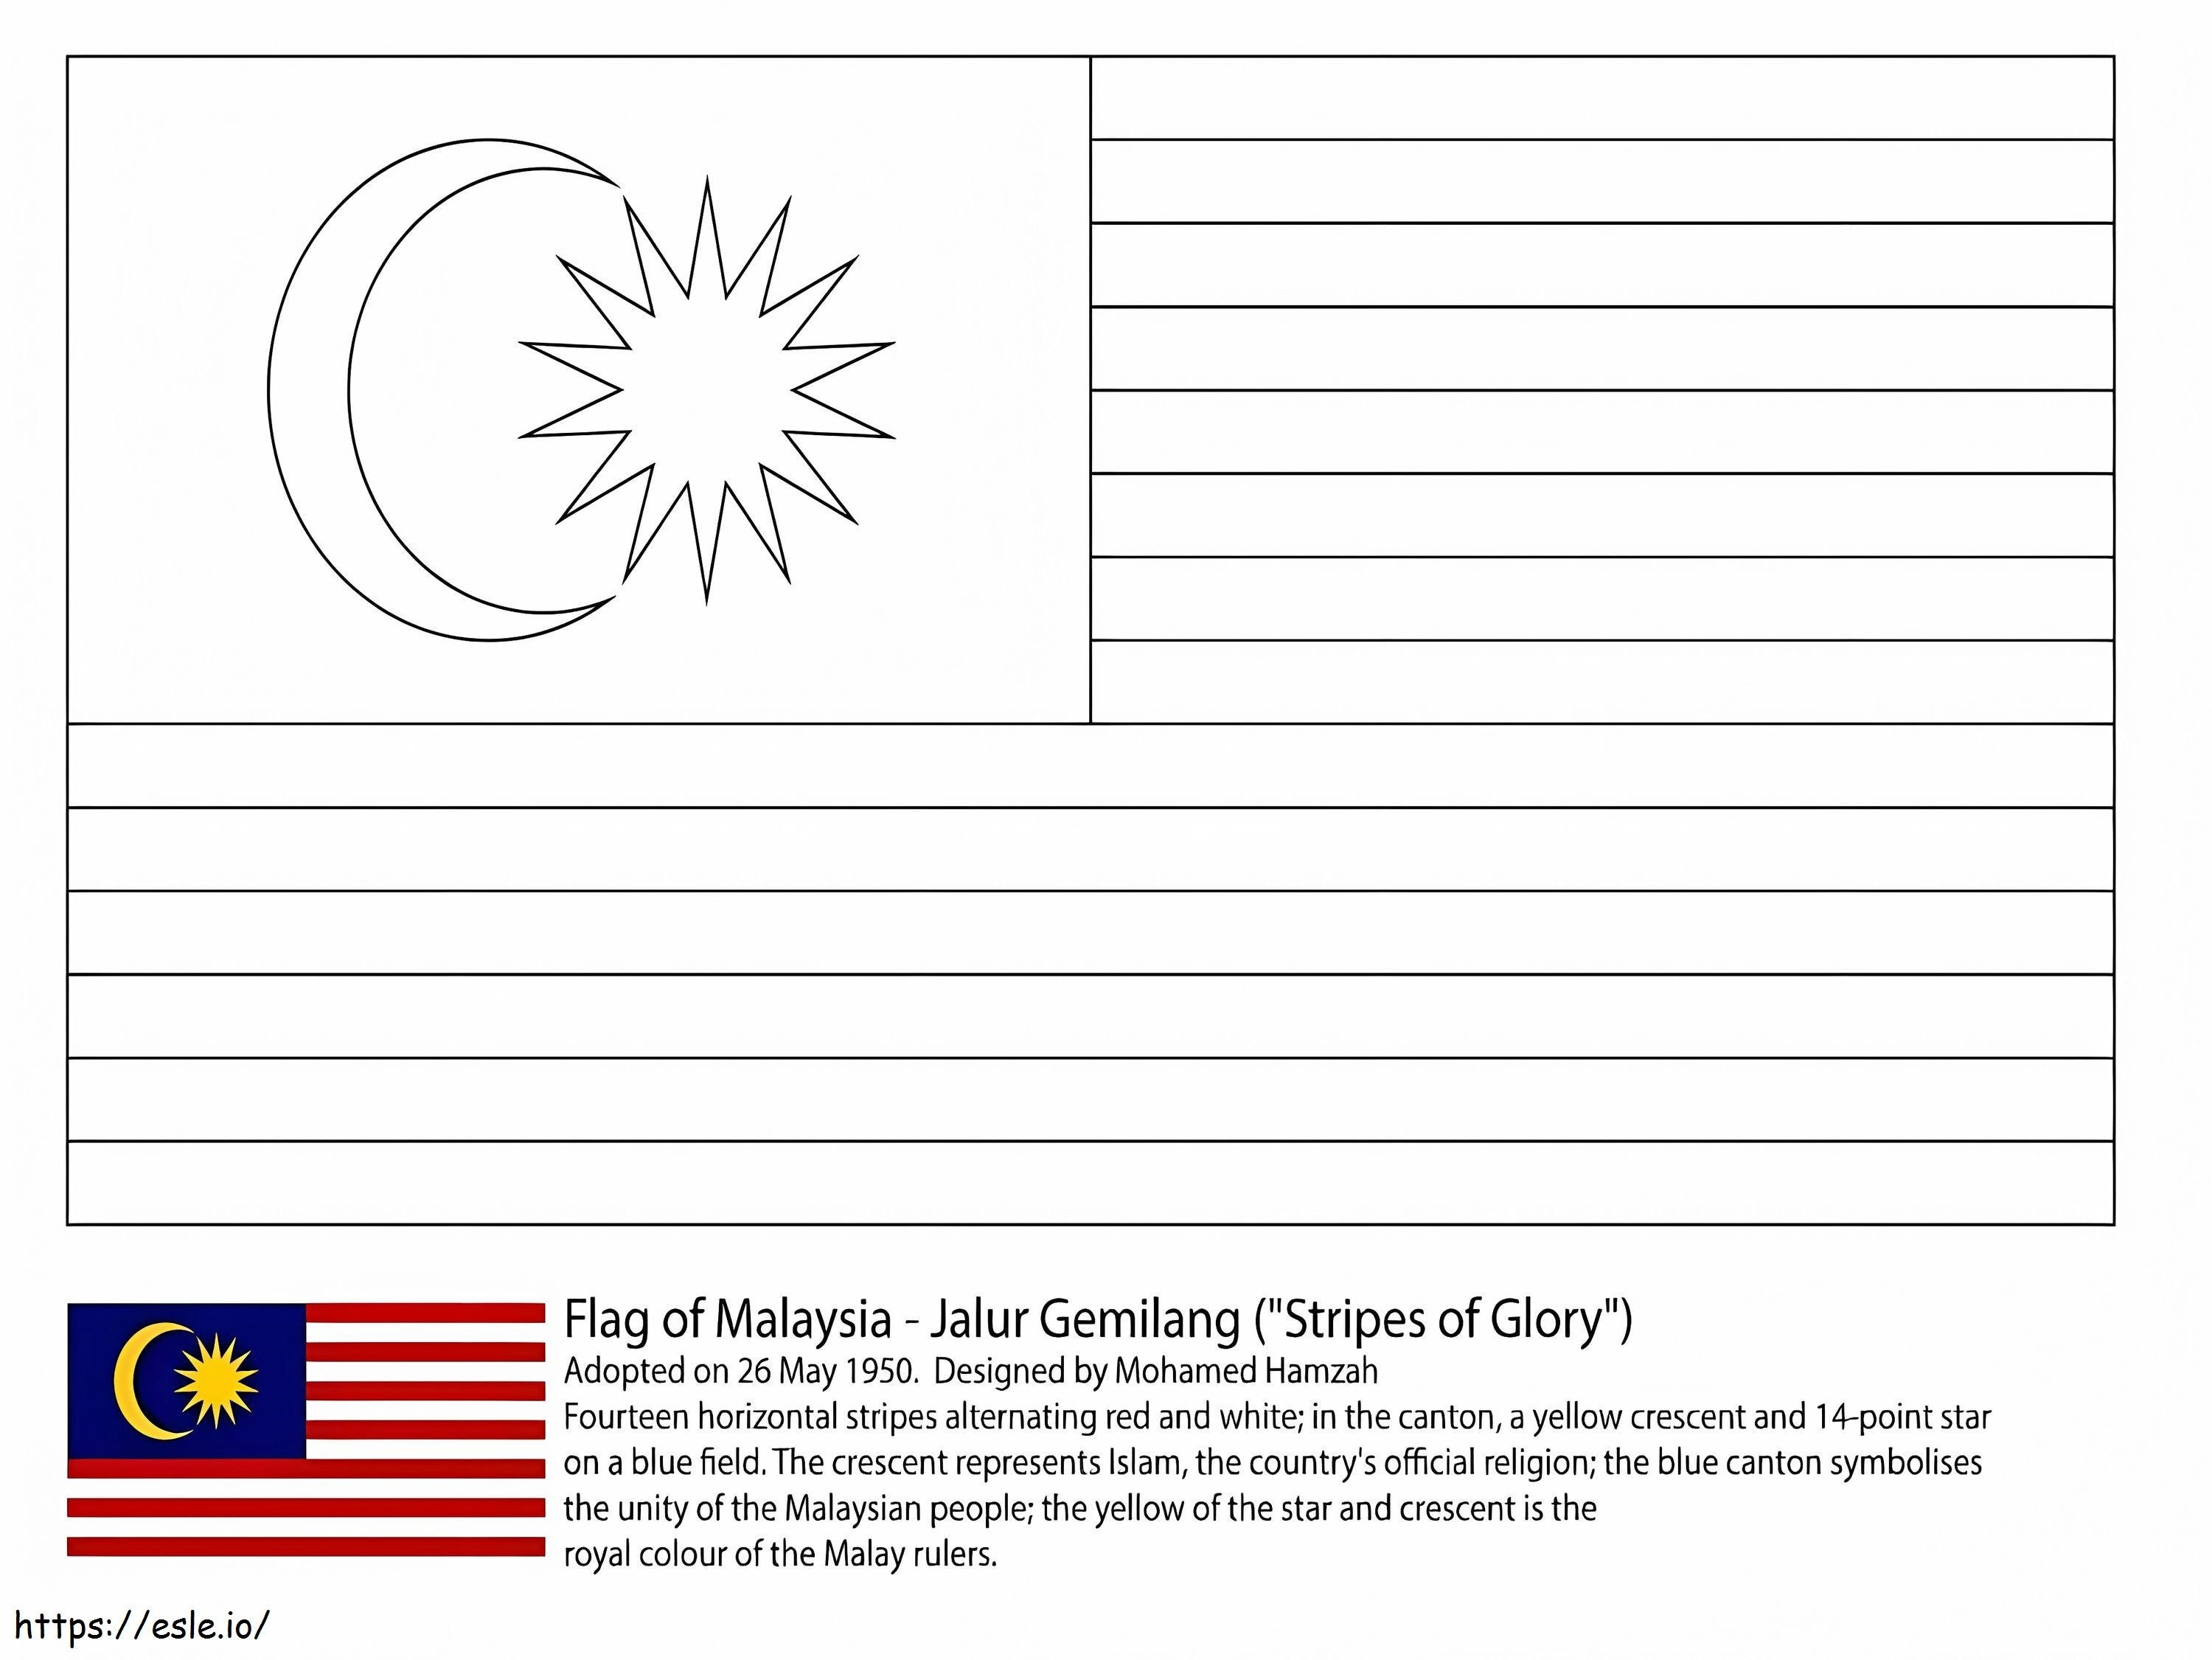 Bandeira da Malásia para colorir